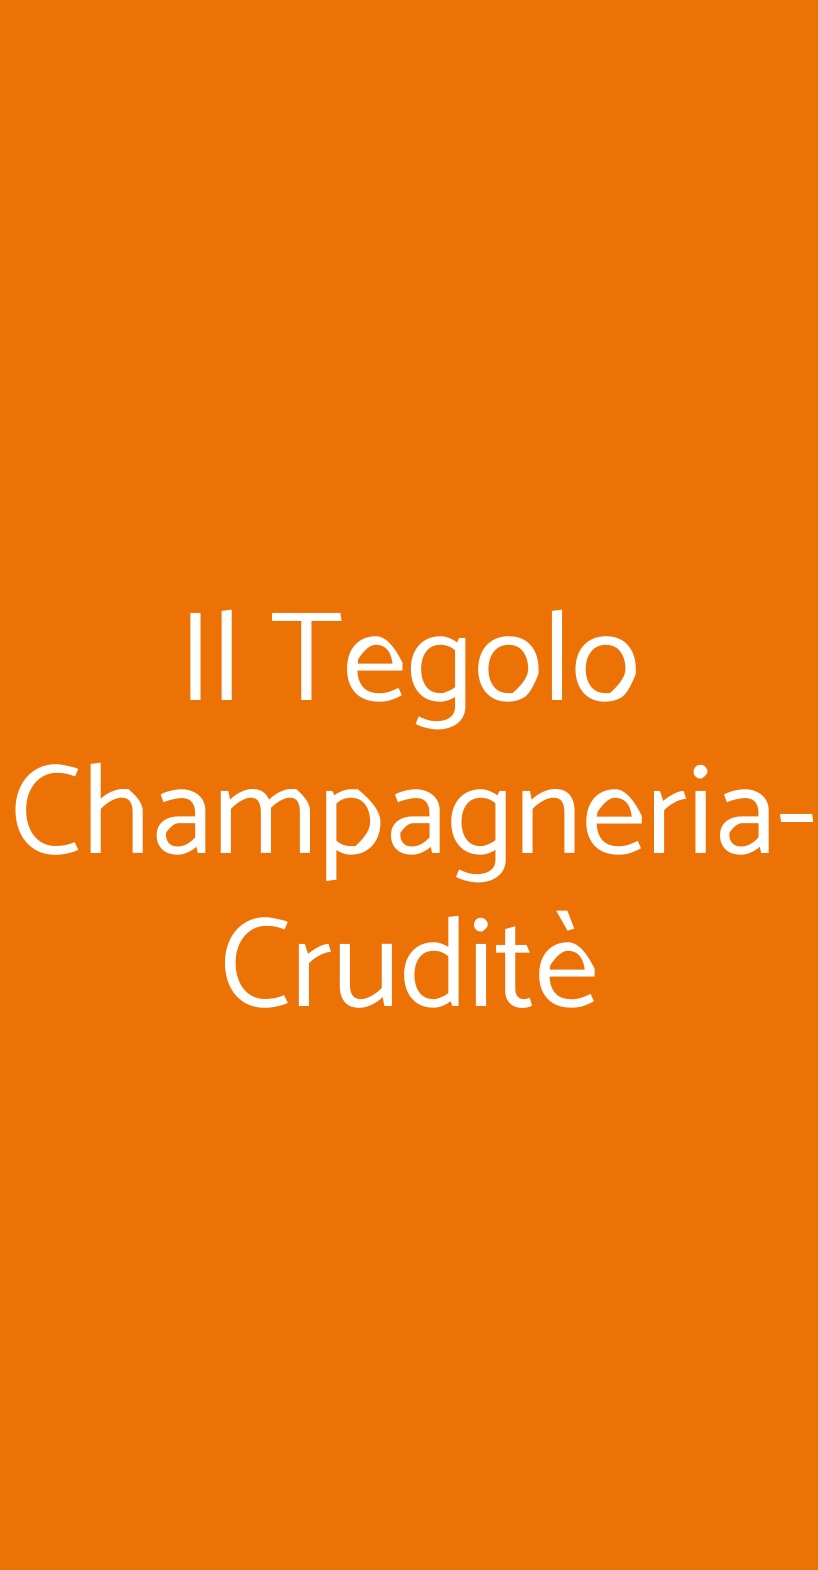 Il Tegolo Champagneria-Cruditè Livorno menù 1 pagina